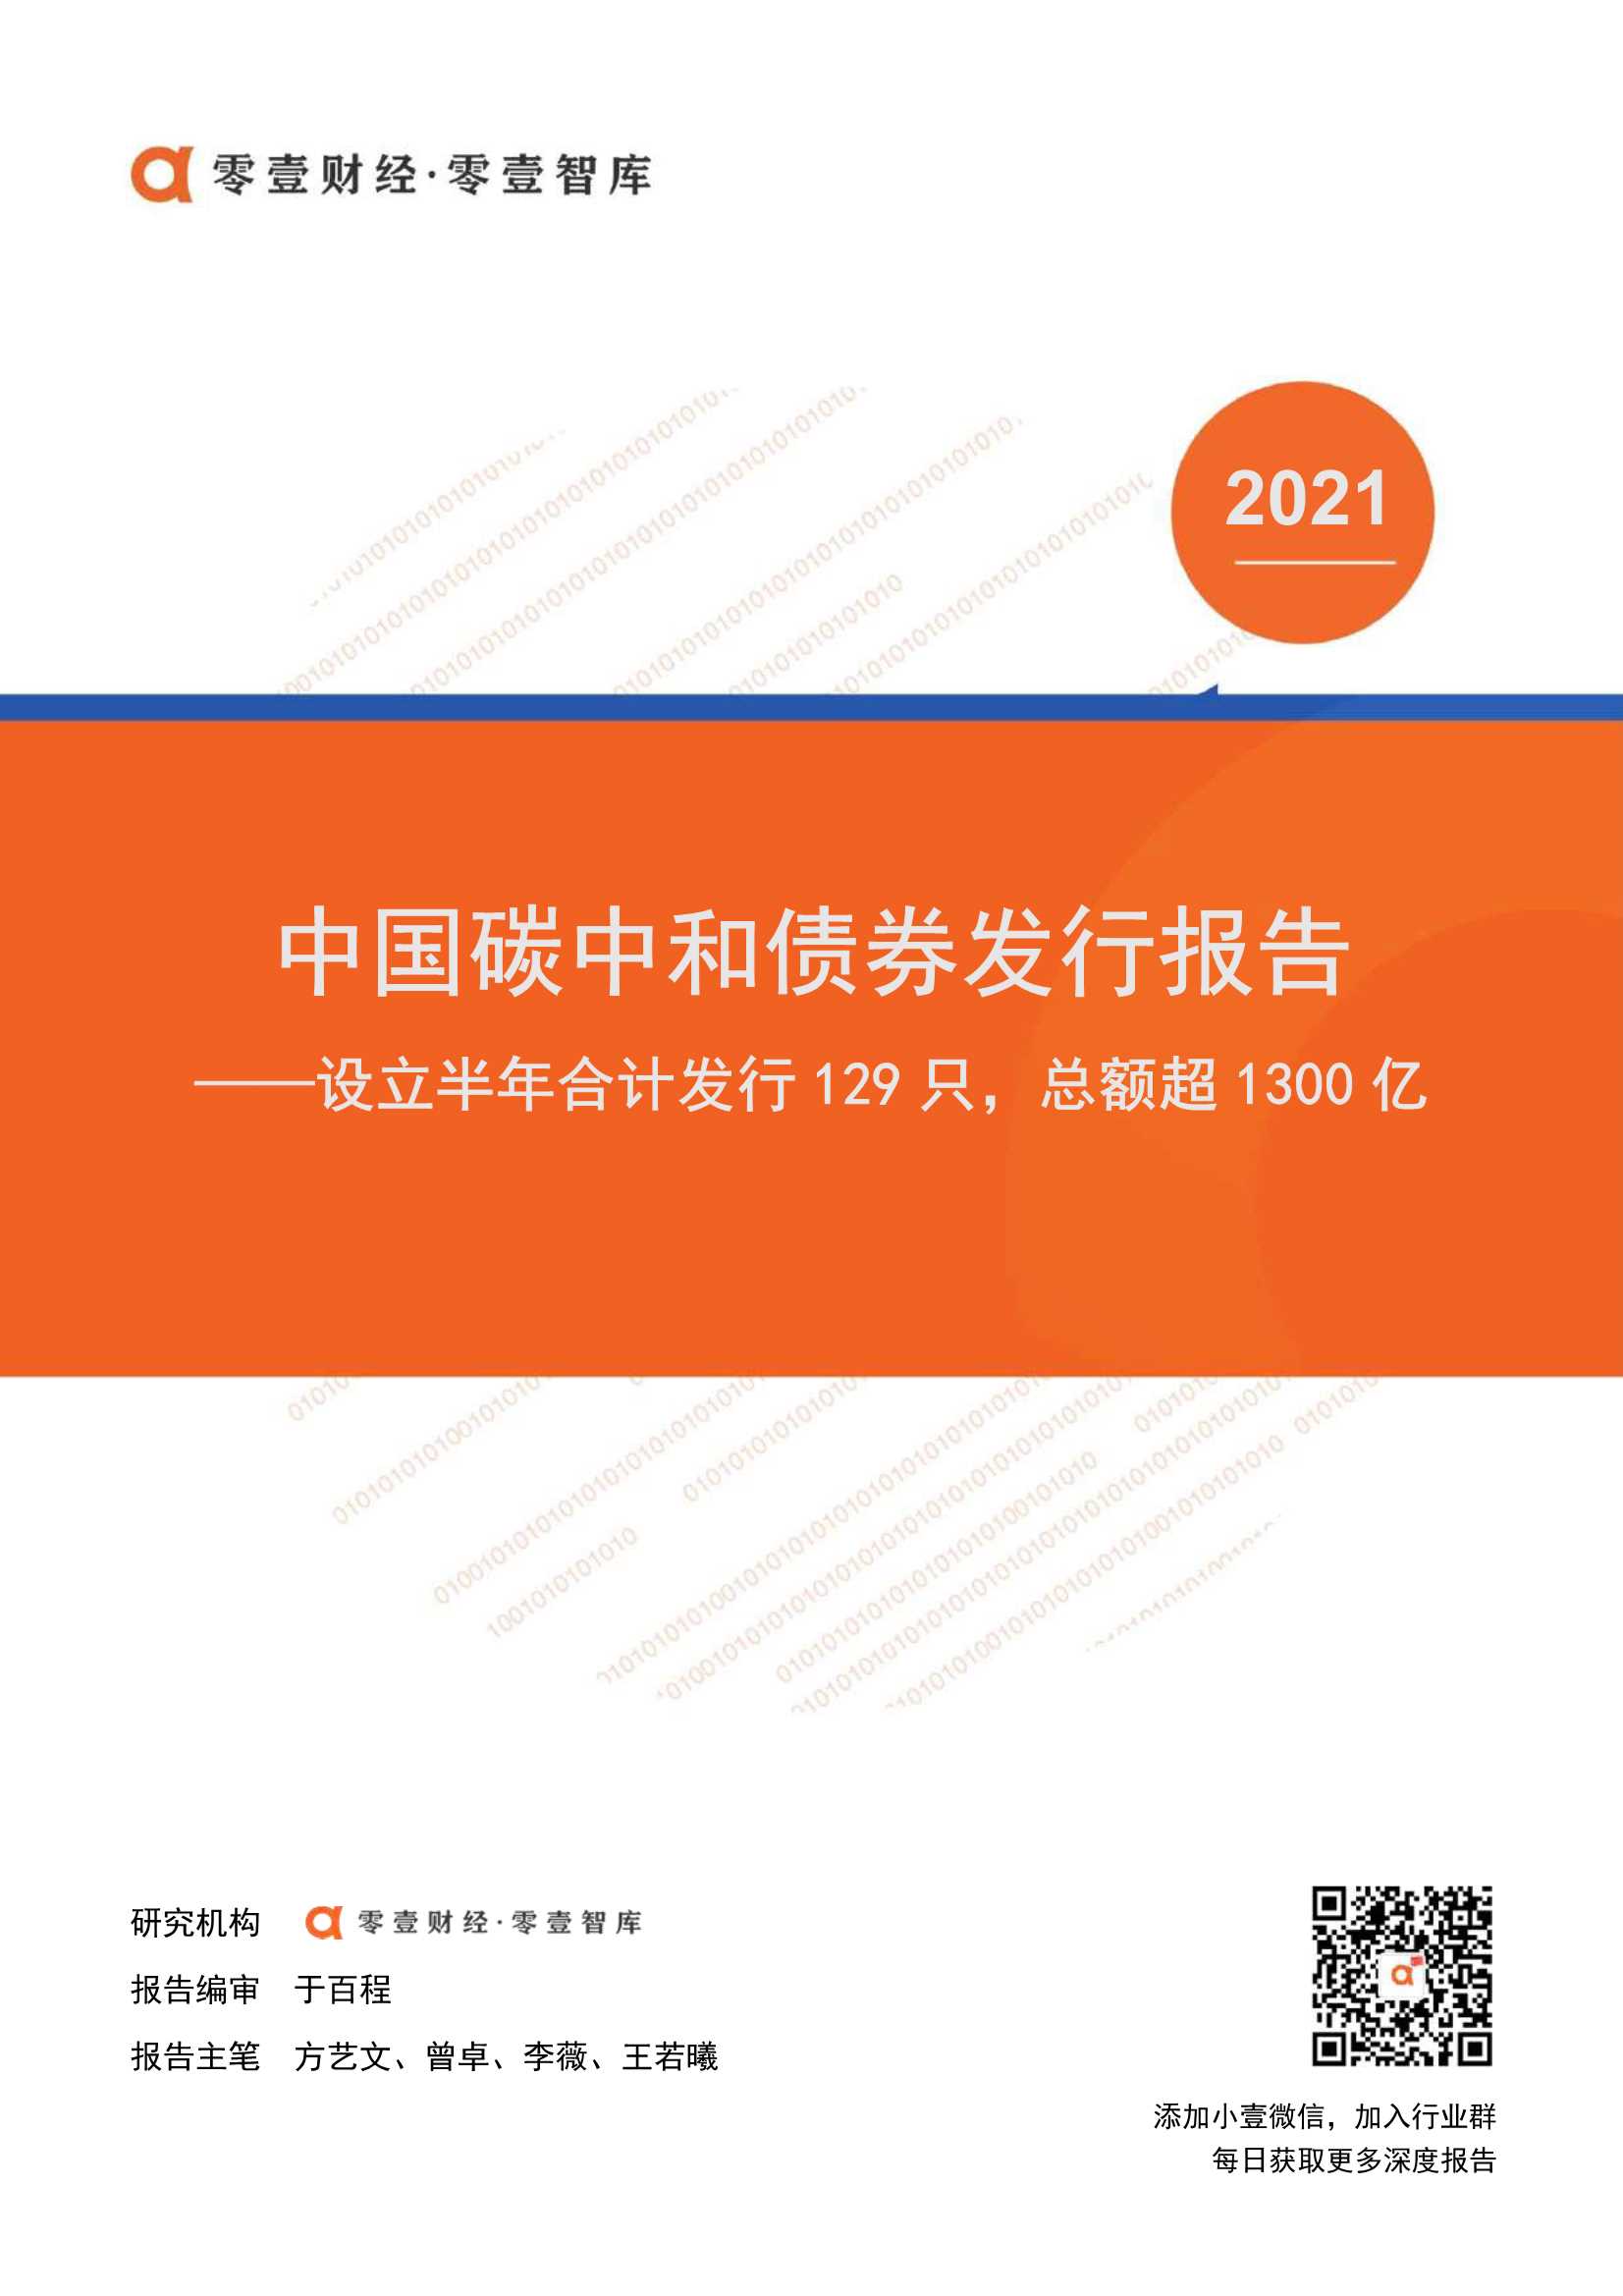 中国碳中和债券发行报告-2021.08-21页